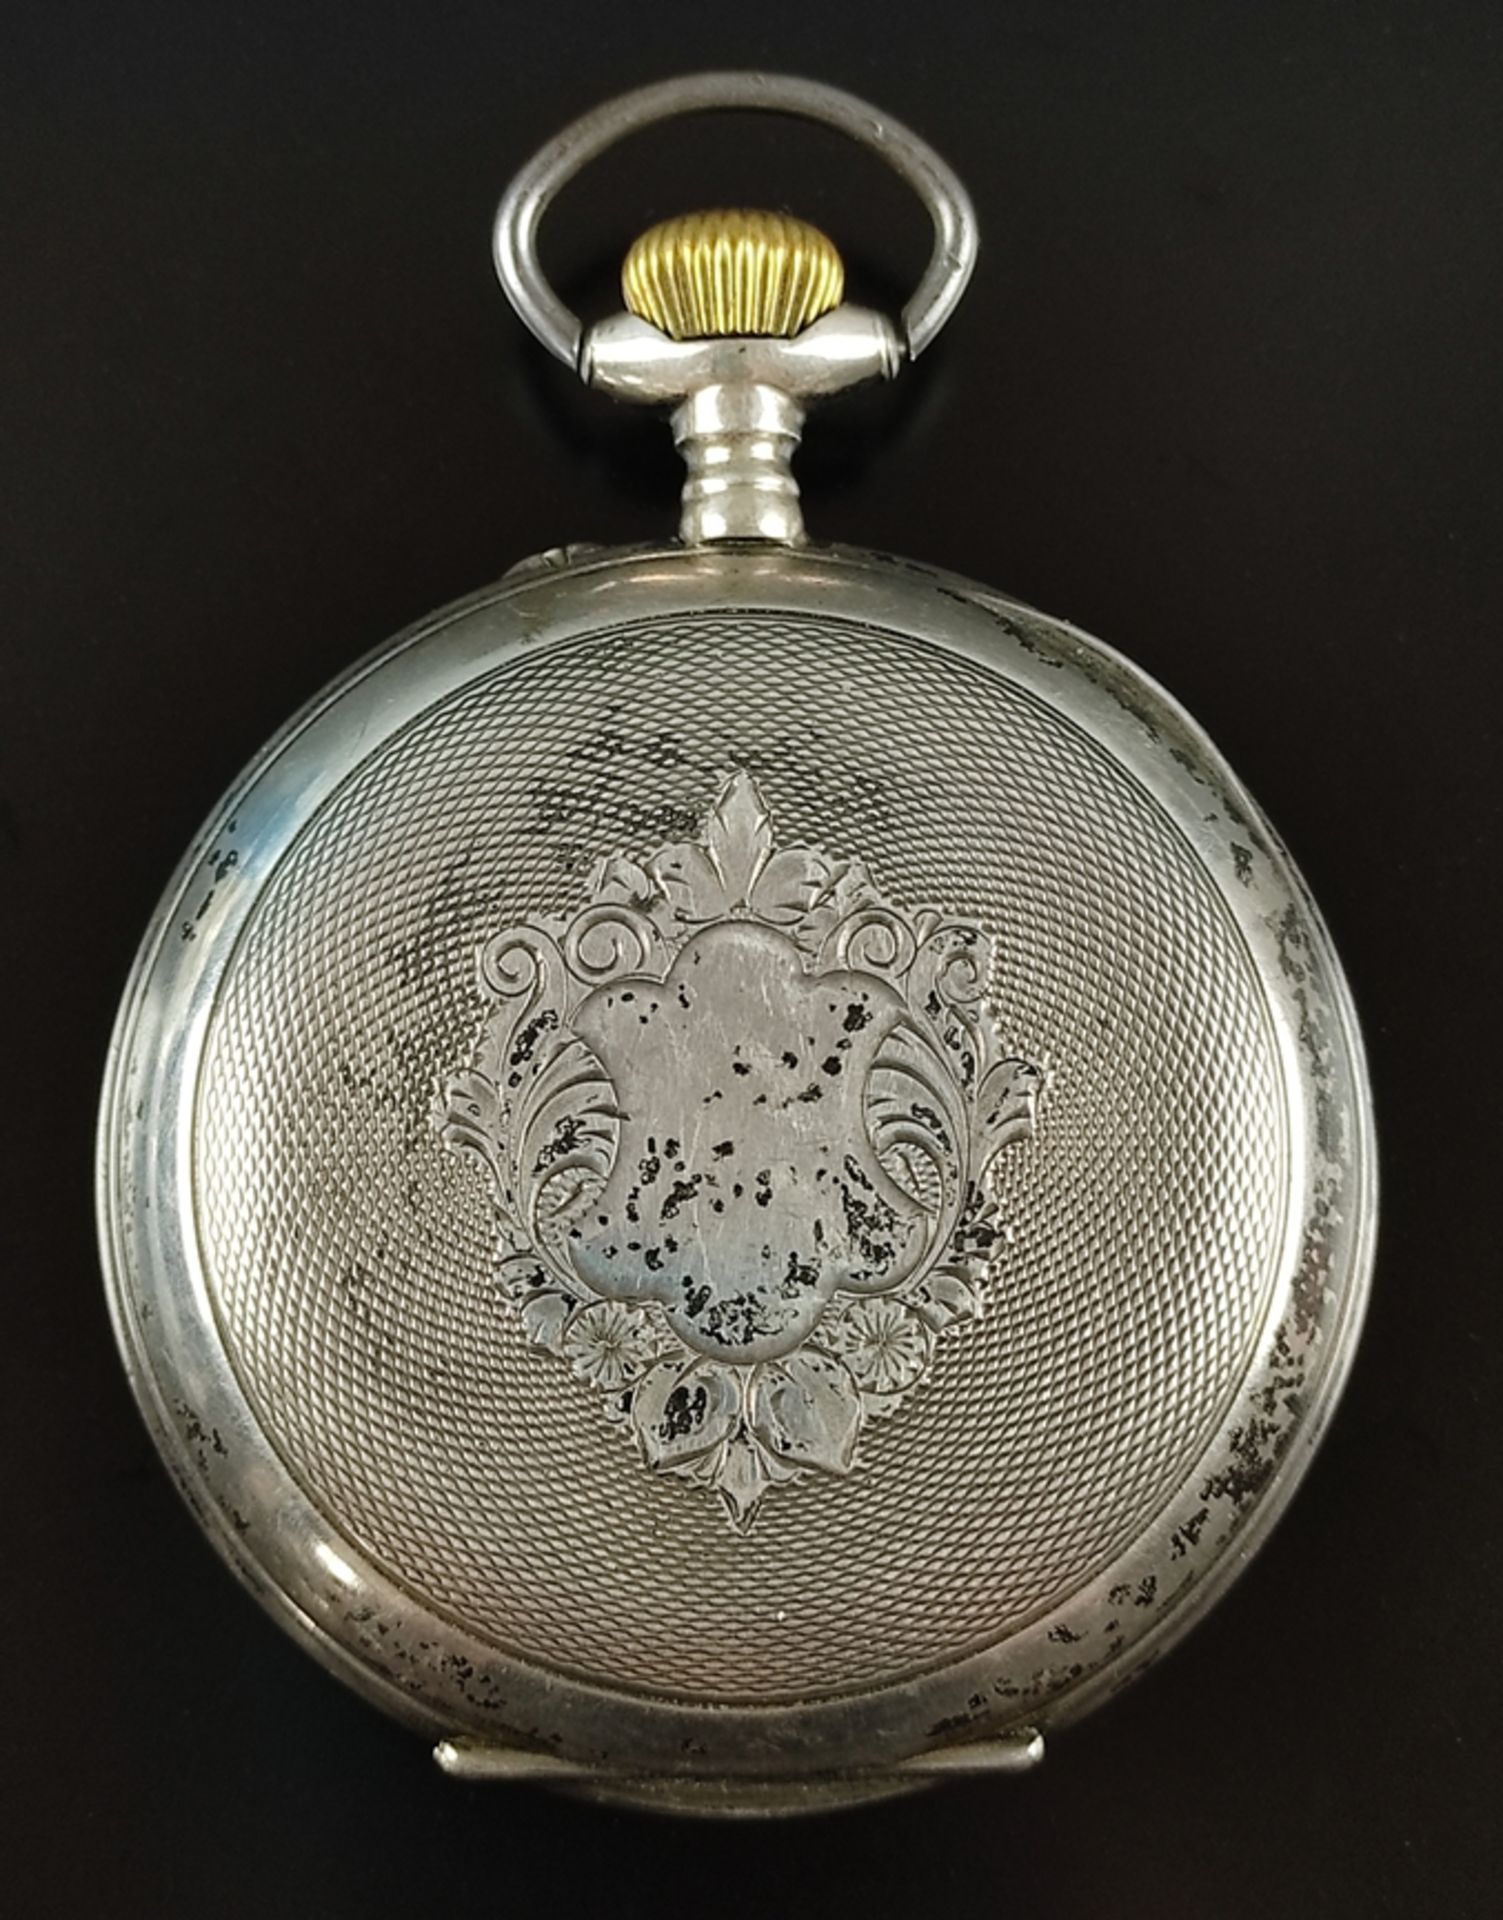 Große Taschenuhr/Eisenbahner-Uhr, "Regulateur" mit kleiner Sekunde, Ziffernblatt mit römischen Ziff - Bild 7 aus 7